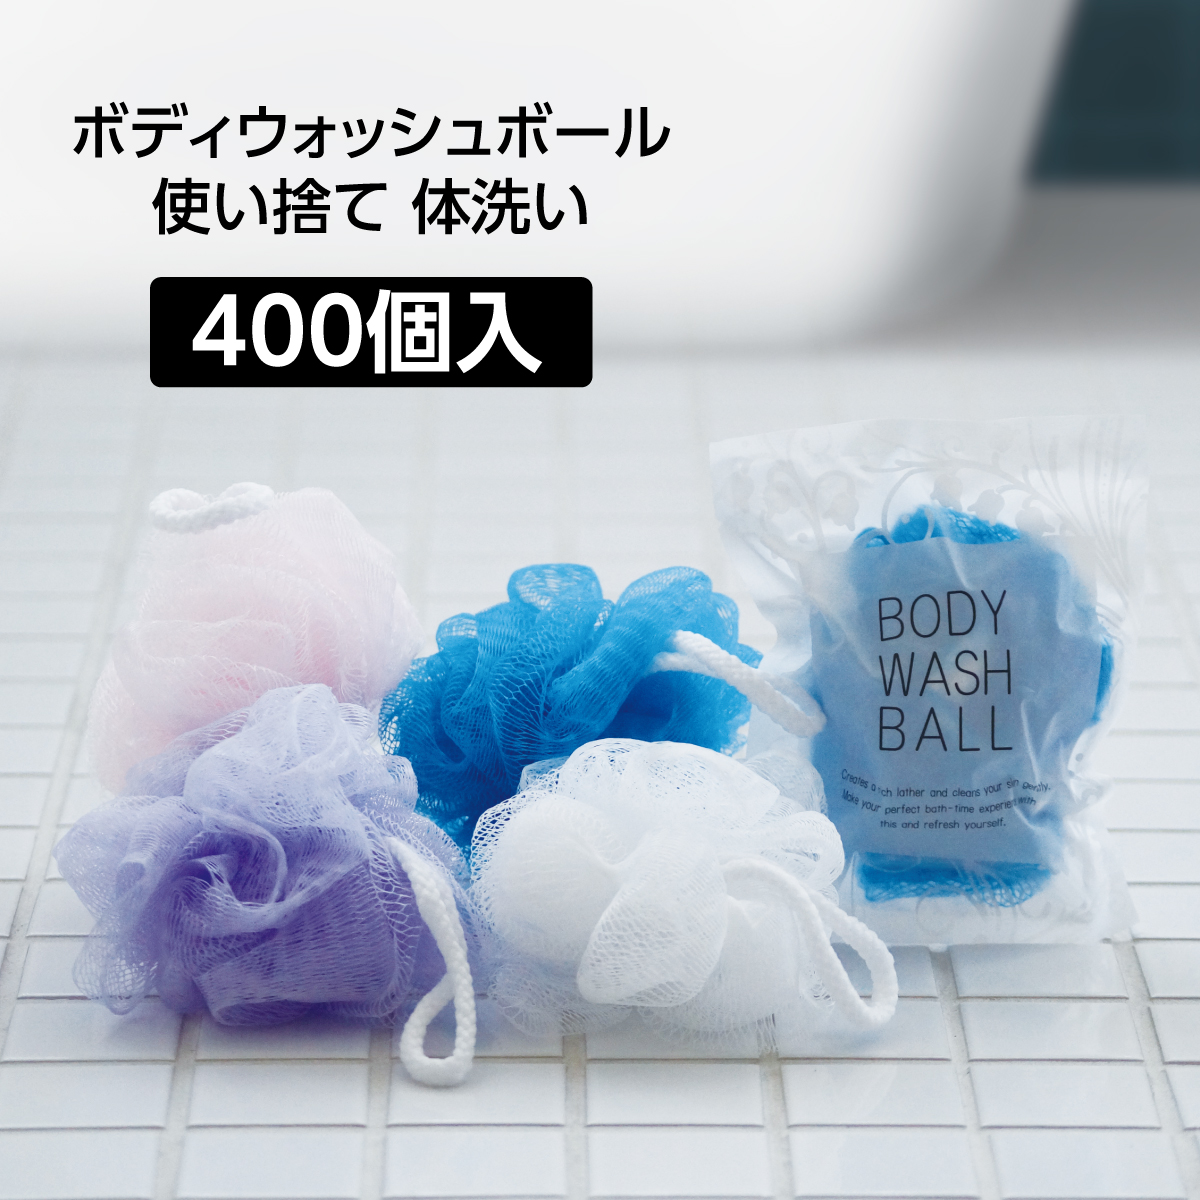 ボディウォッシュボール [4色混載] (400個)